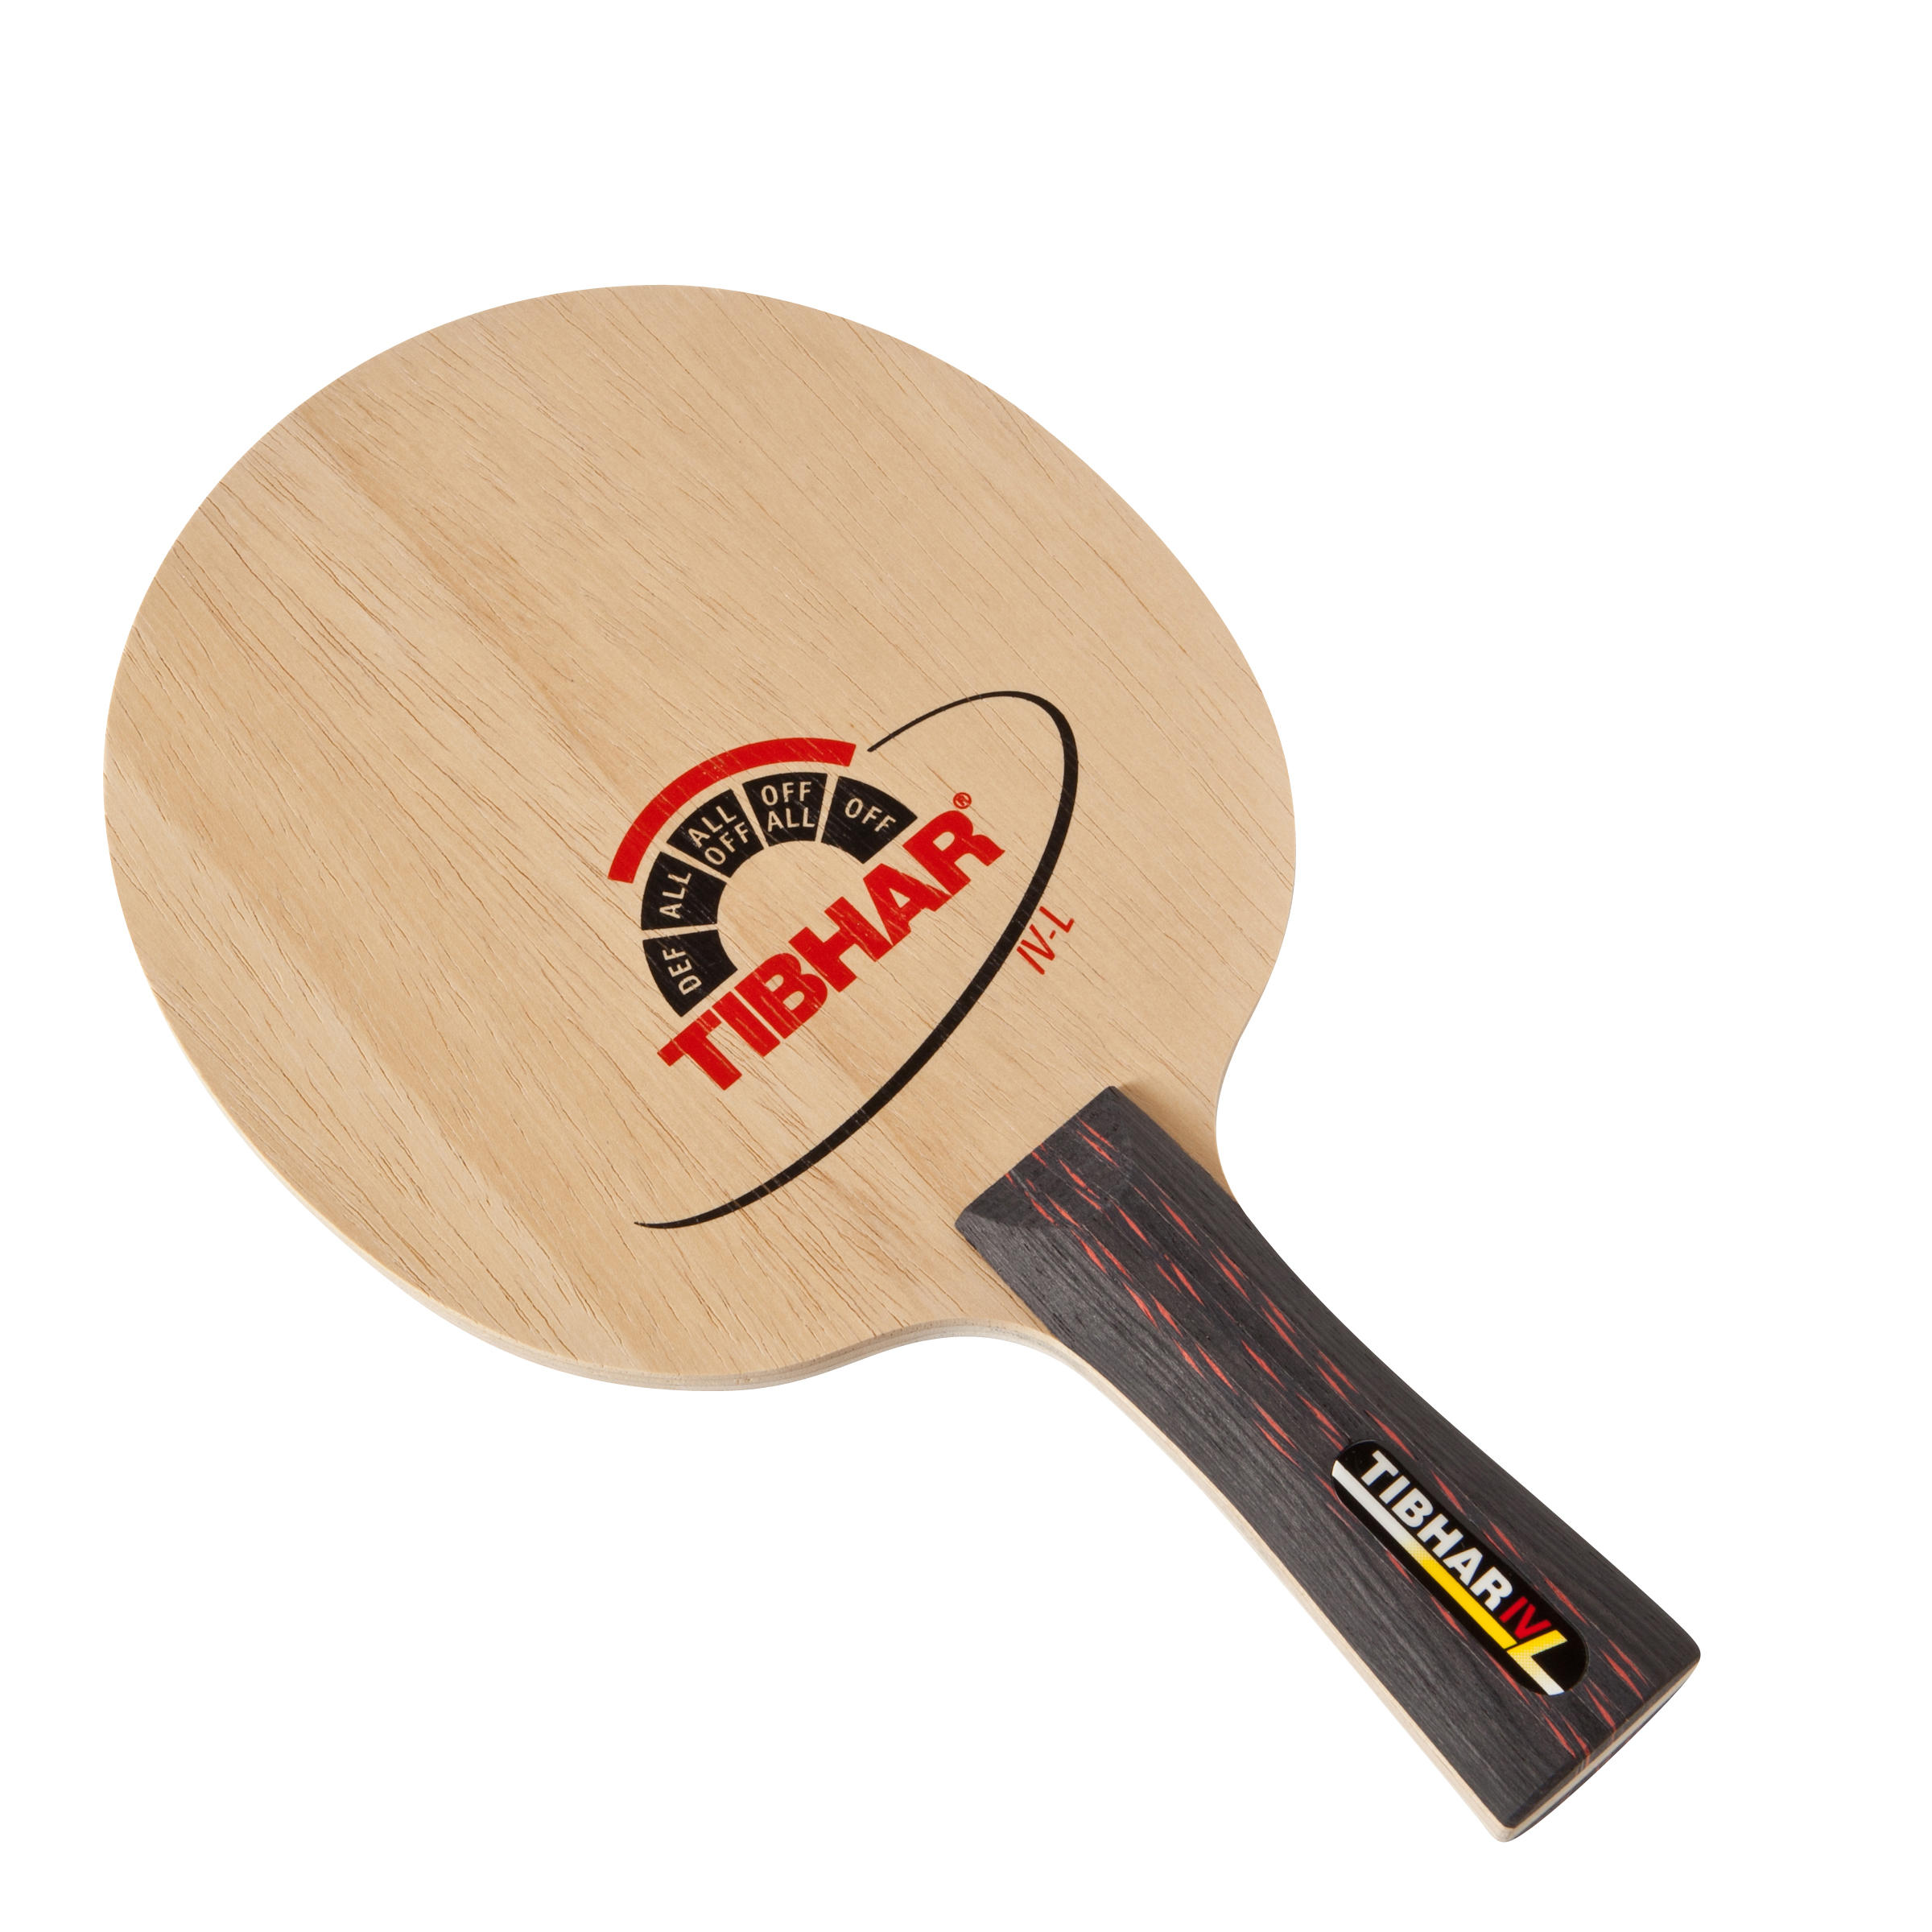 Structură lemn paletă tenis de masă IV L La Oferta Online decathlon imagine La Oferta Online